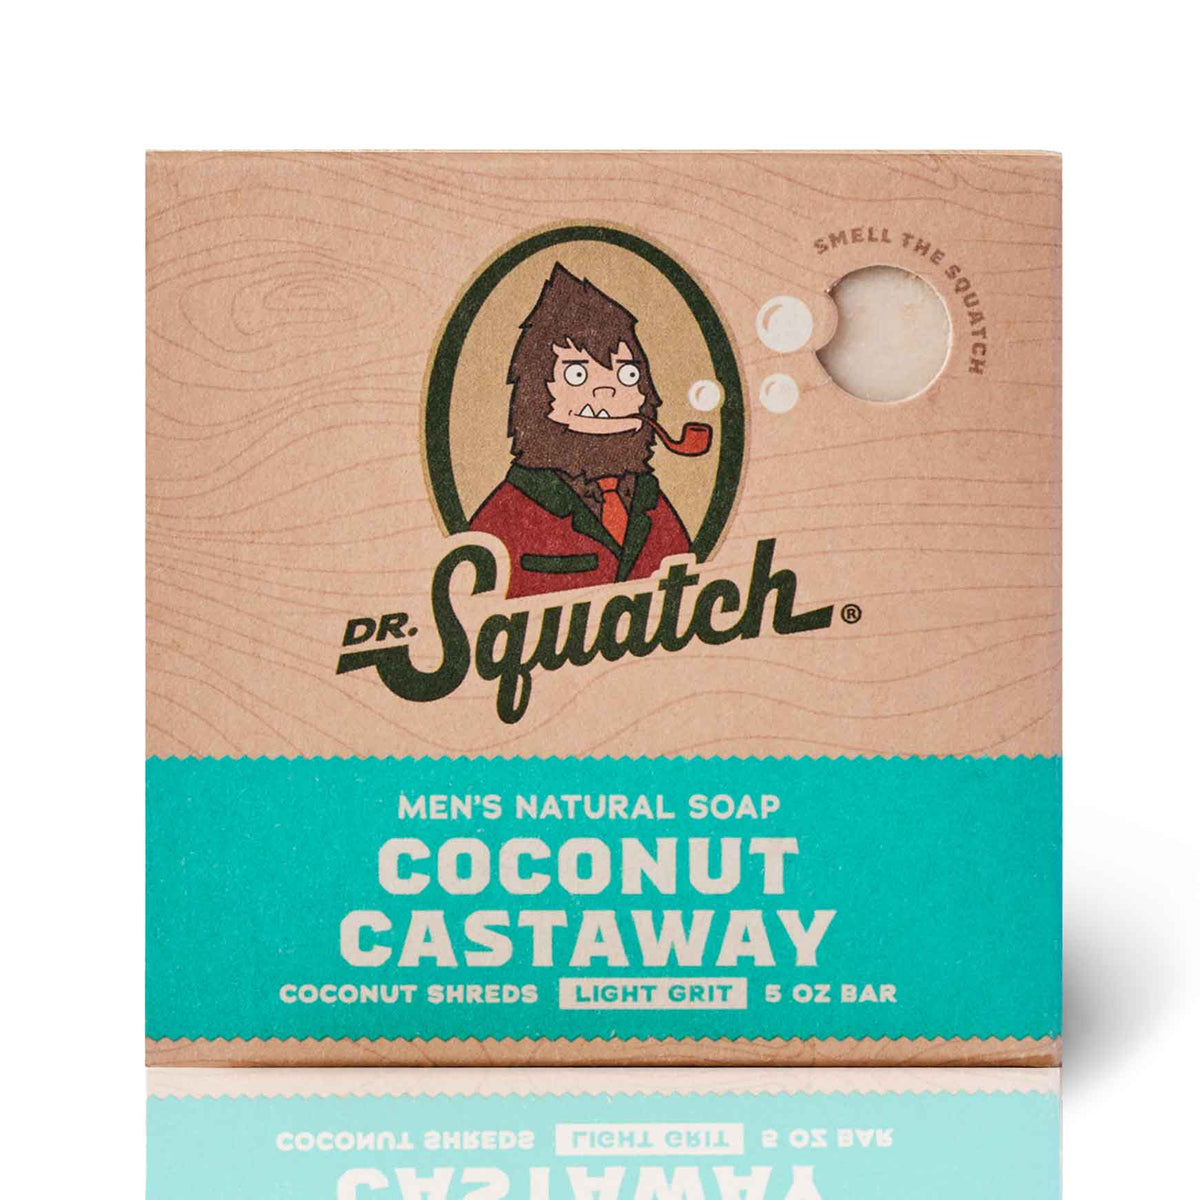 Dr. Squatch COCONUT CASTAWAY Review! 